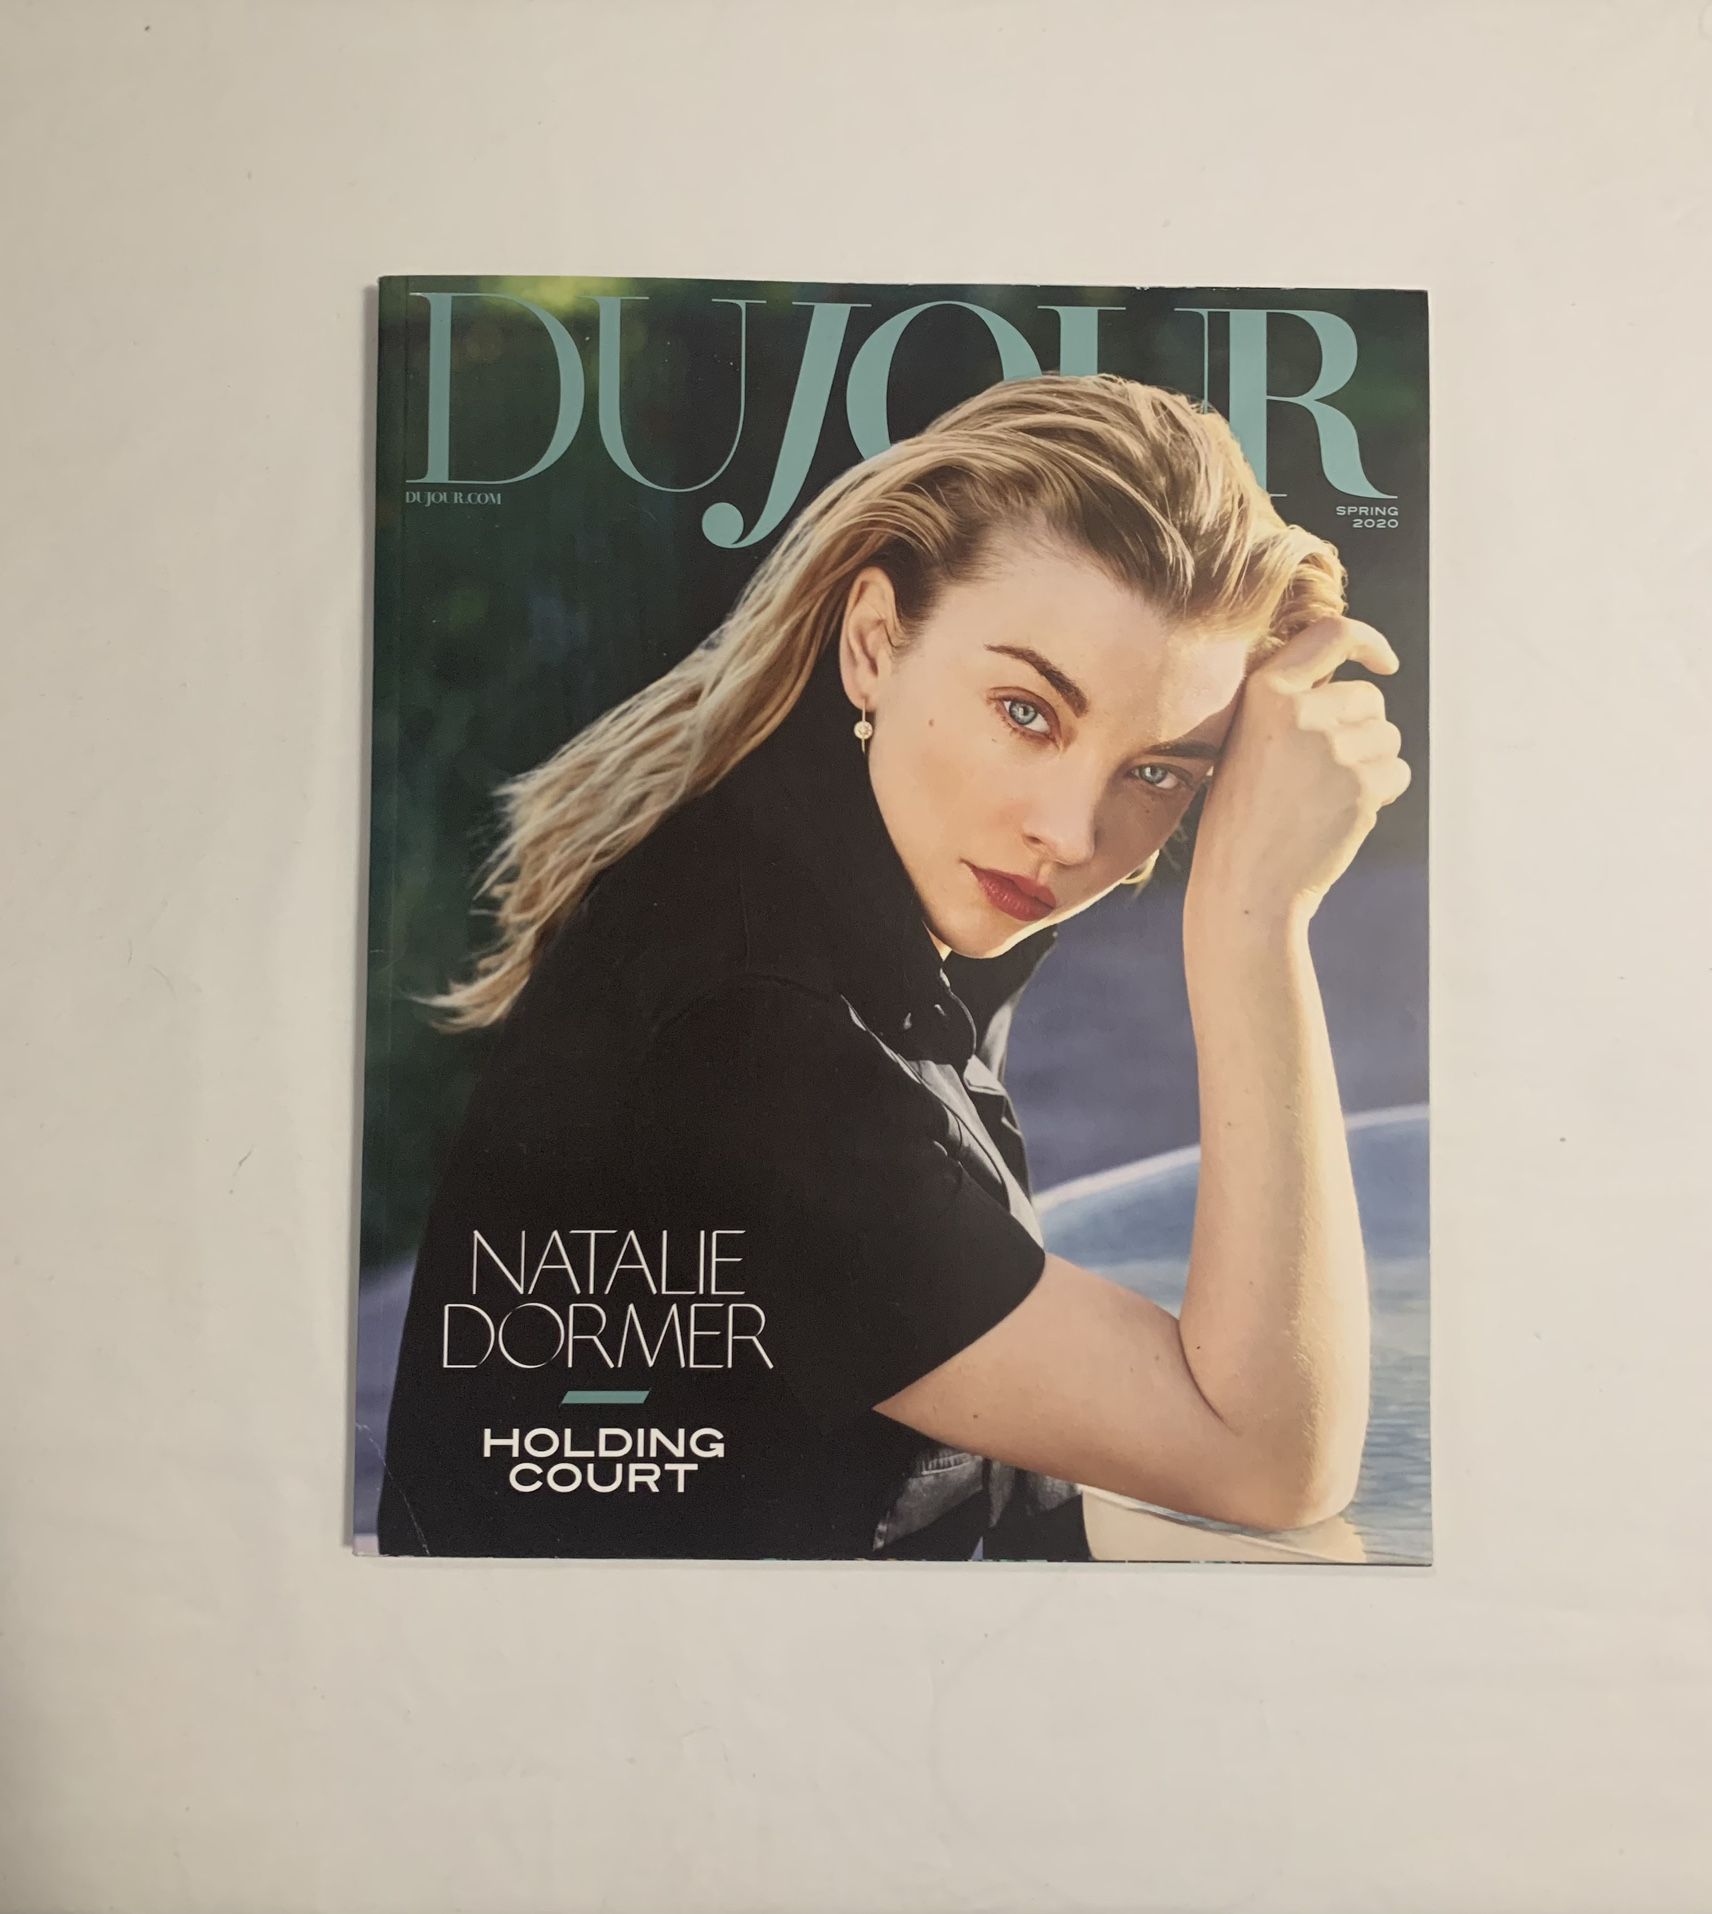 DuJour Natalie Dormer “Holding Court” Issue Spring 2020 Magazine